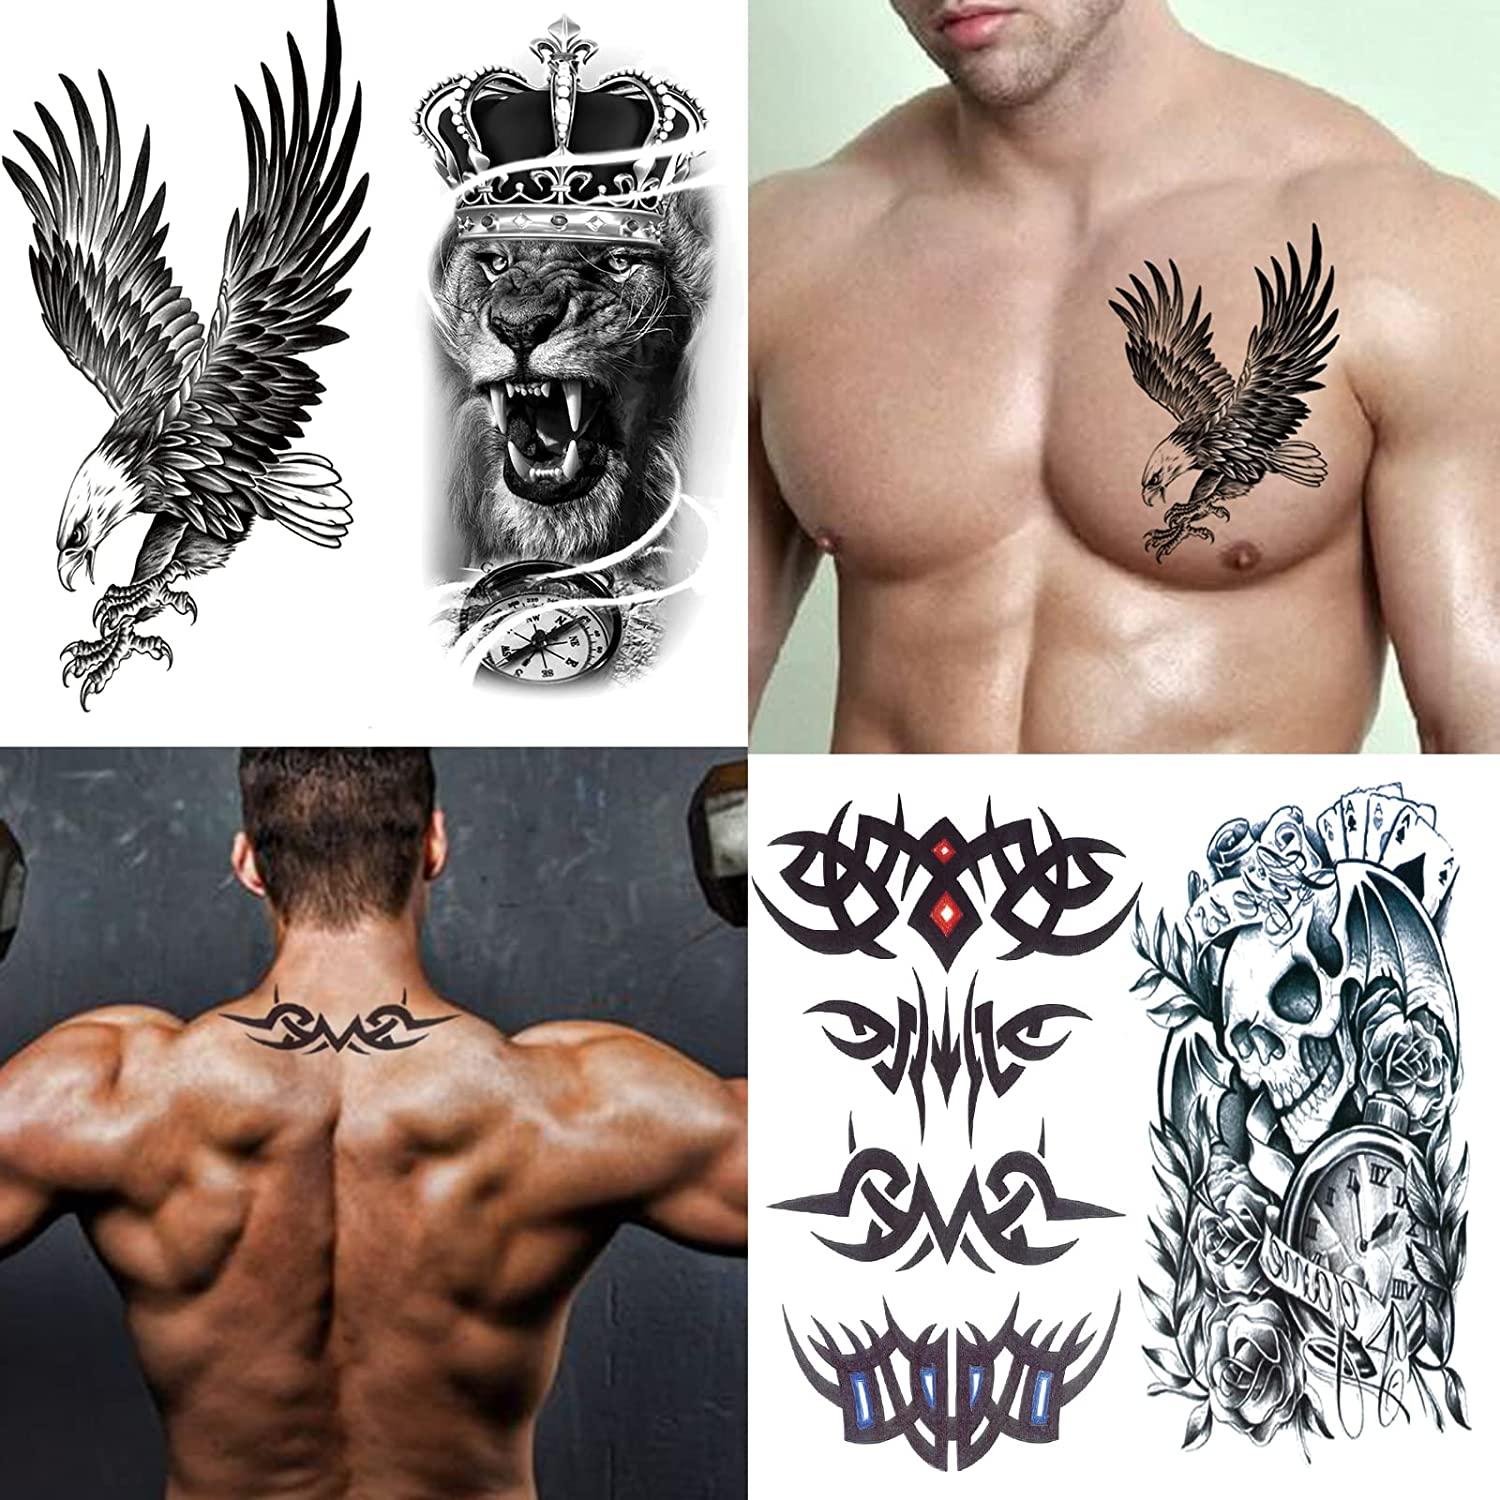 Body tattoos - Best Tattoo Ideas Gallery